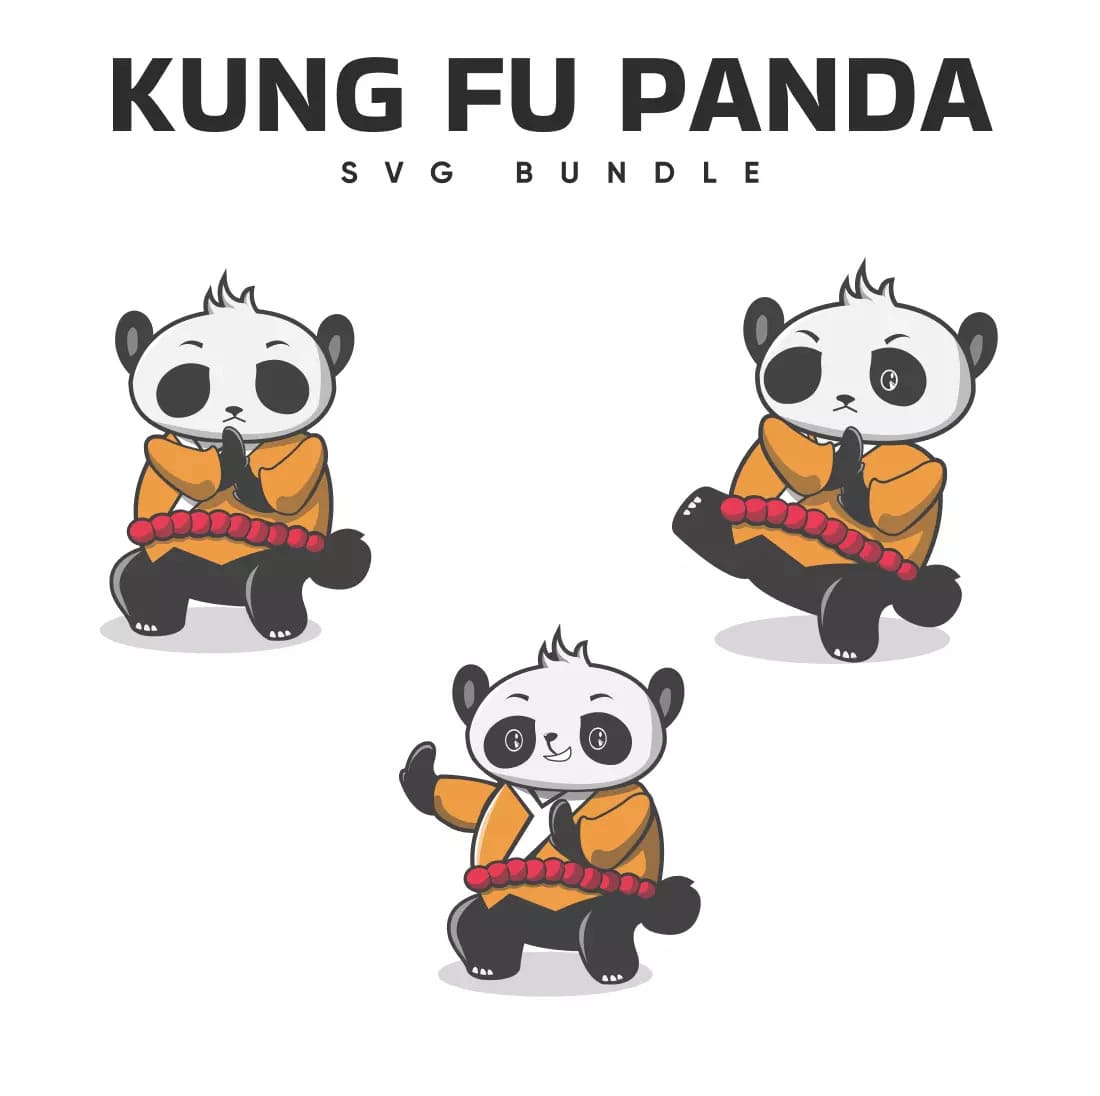 Panda PNG - Kungfu Panda, Panda Bear, Cute Panda, Baby Panda, Cartoon Panda,  Panda Face, Panda Cute, Panda Drawing, Panda Silhouette, Panda Art, Kawaii  Panda, Birthday Panda, Cute Baby Panda, Panda Outline